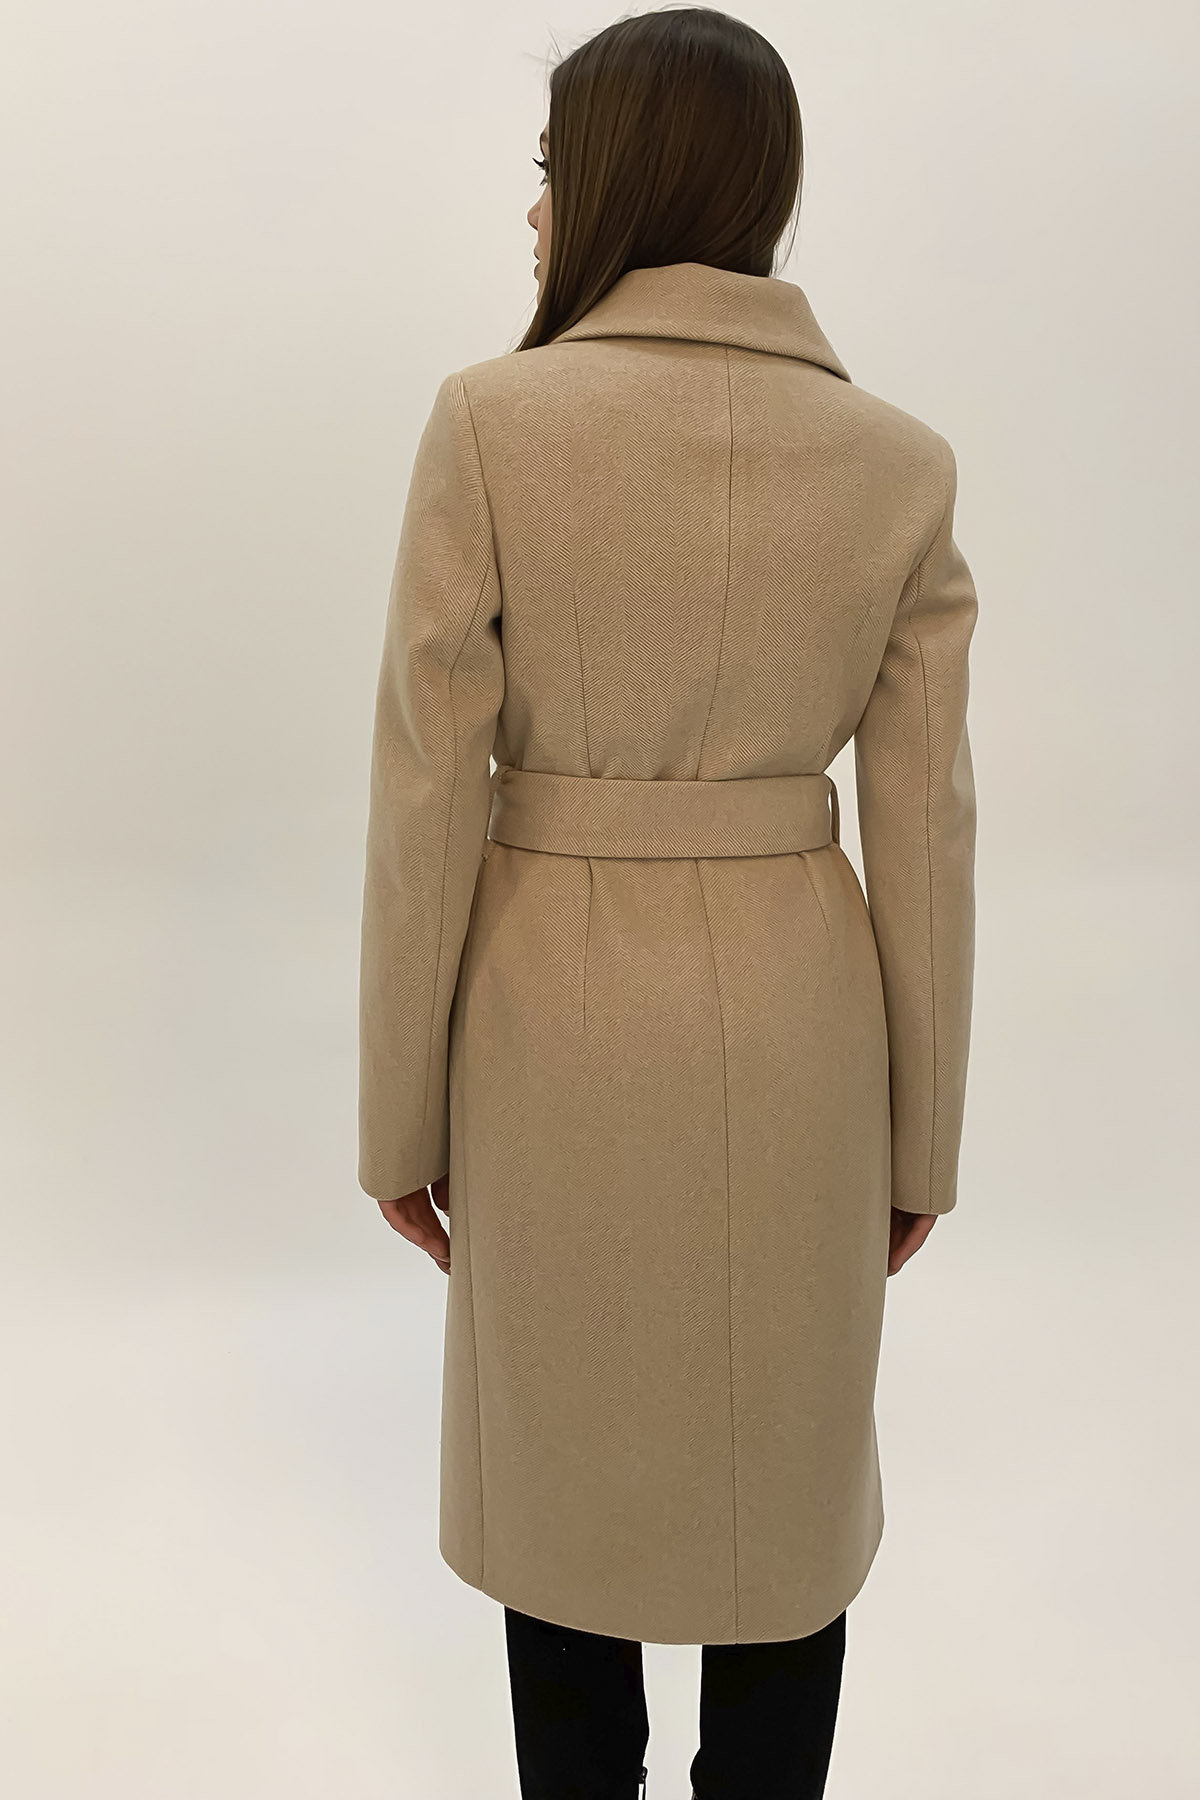 Элегантное пальто из кашемира Кареро 8771 АРТ. 45118 Цвет: Бежевый - фото 4, интернет магазин tm-modus.ru